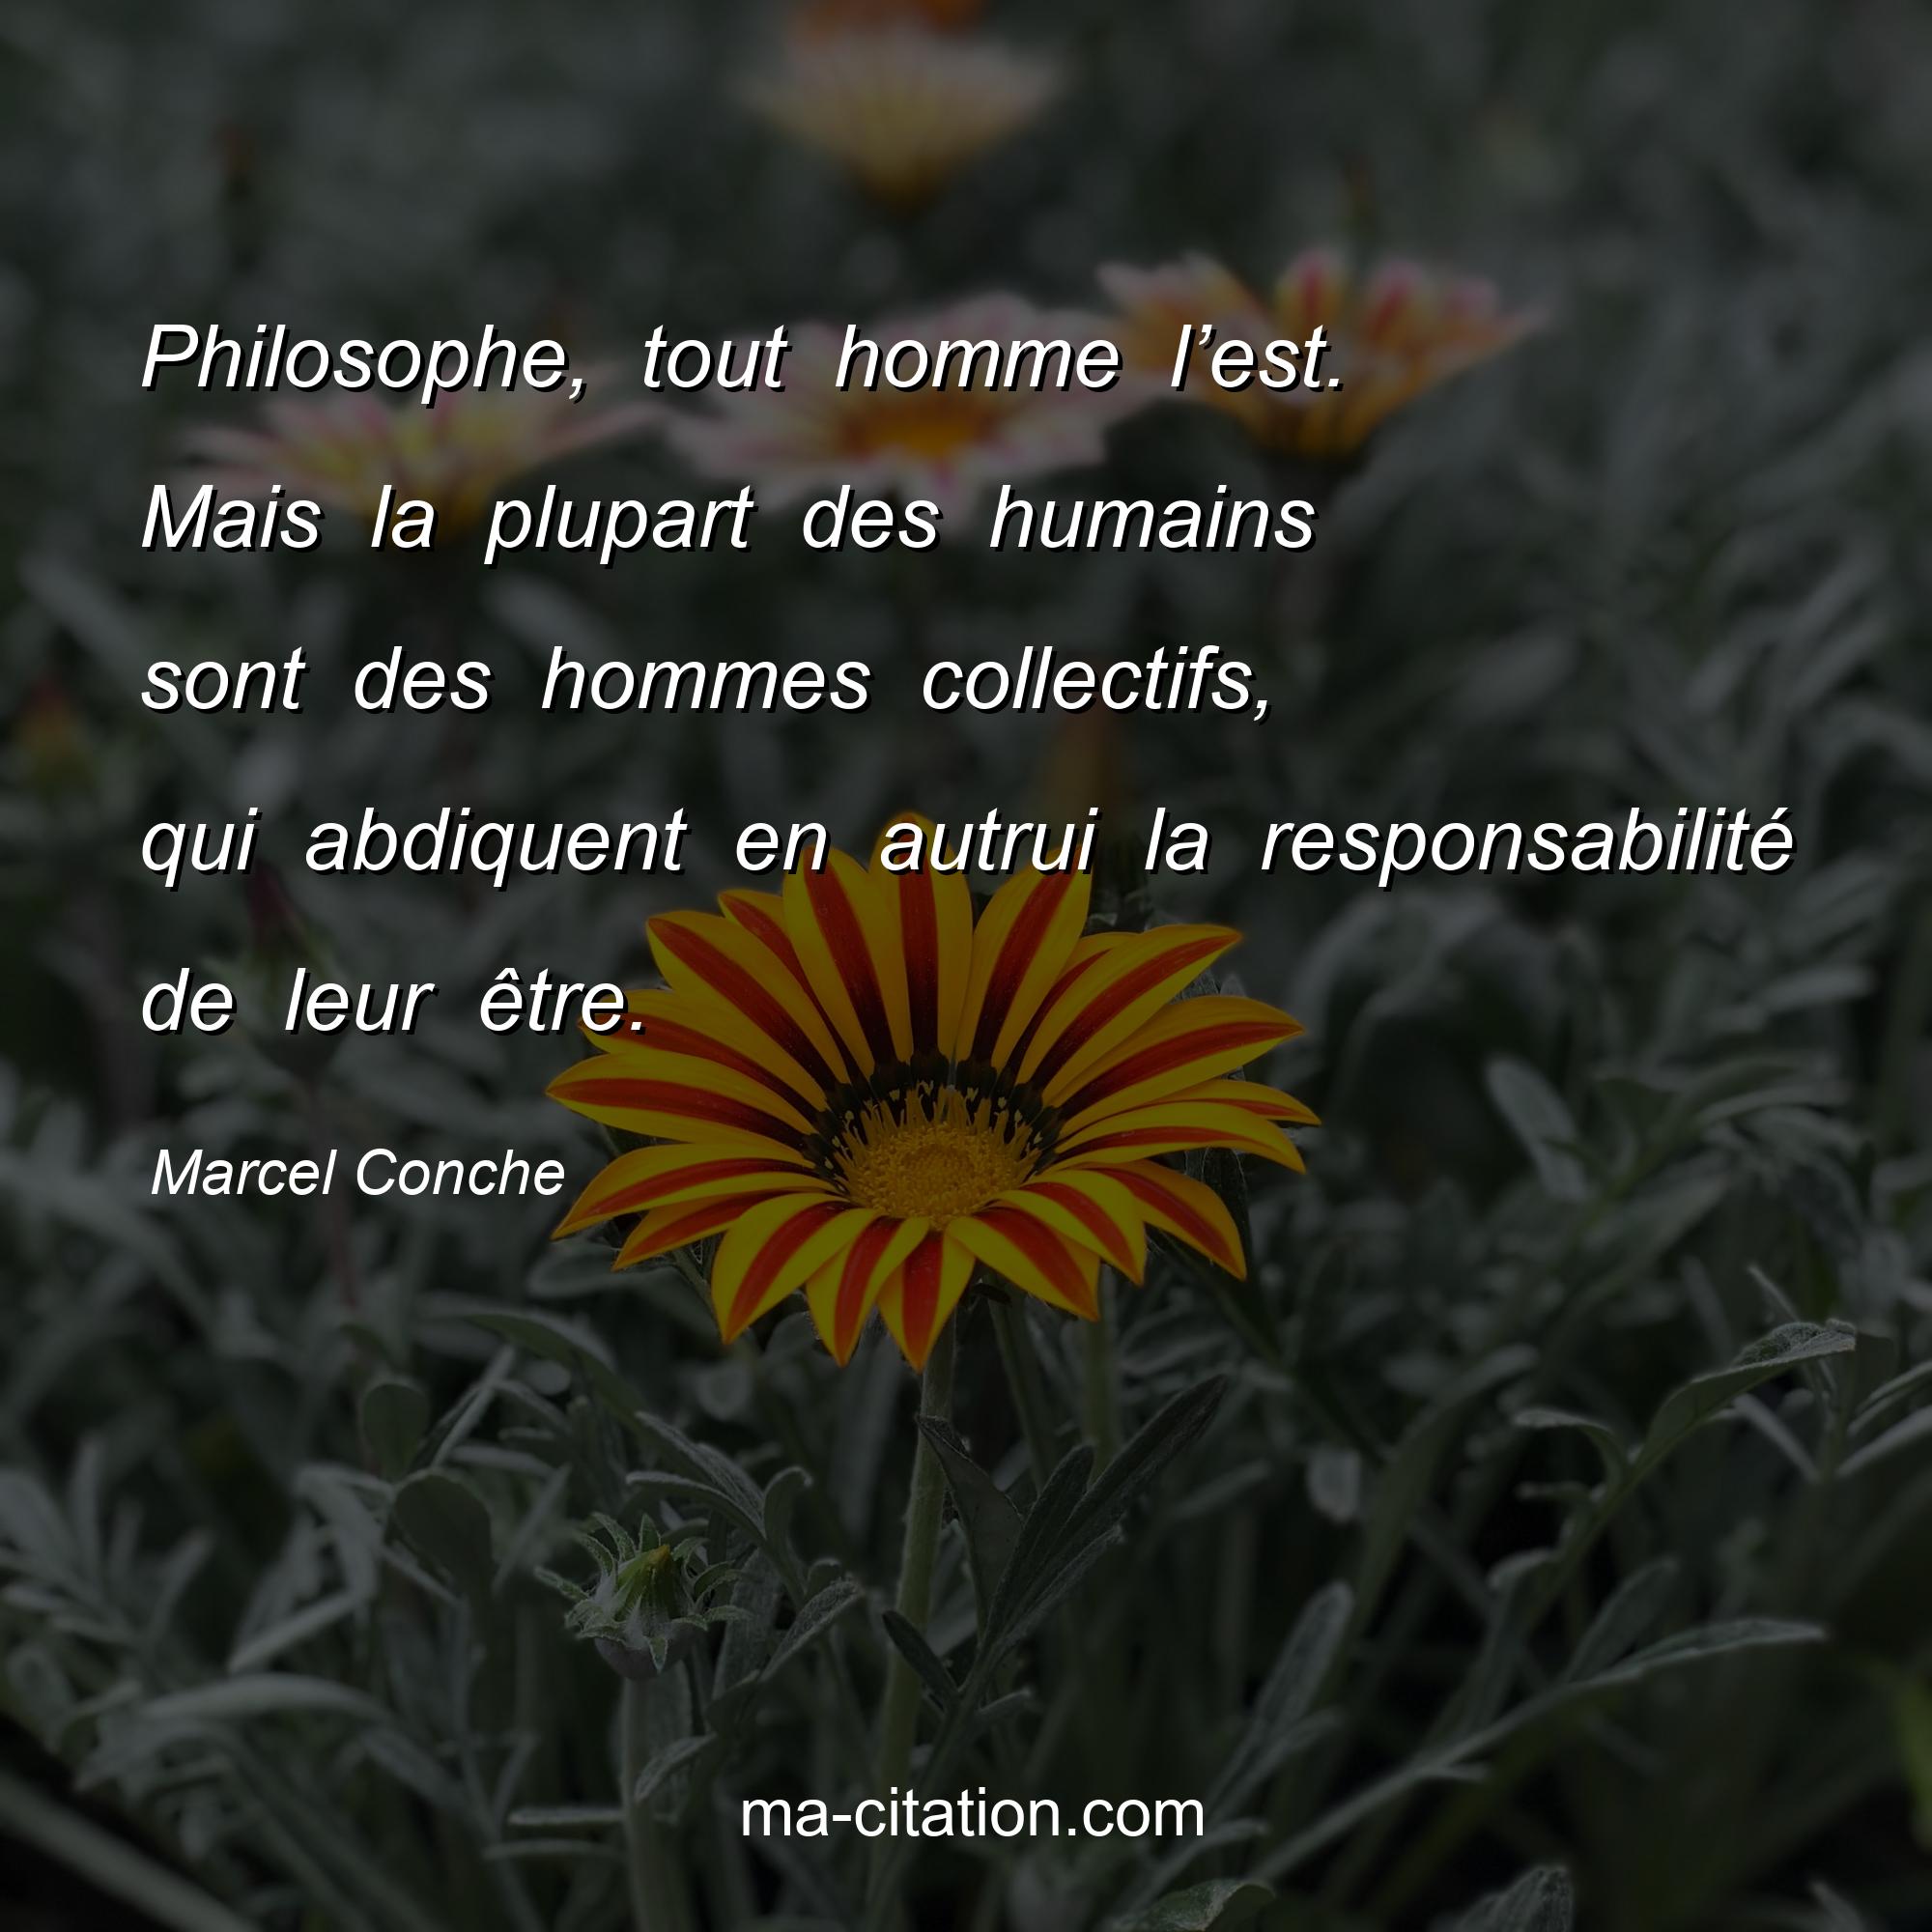 Marcel Conche : Philosophe, tout homme l’est. Mais la plupart des humains sont des hommes collectifs, qui abdiquent en autrui la responsabilité de leur être.